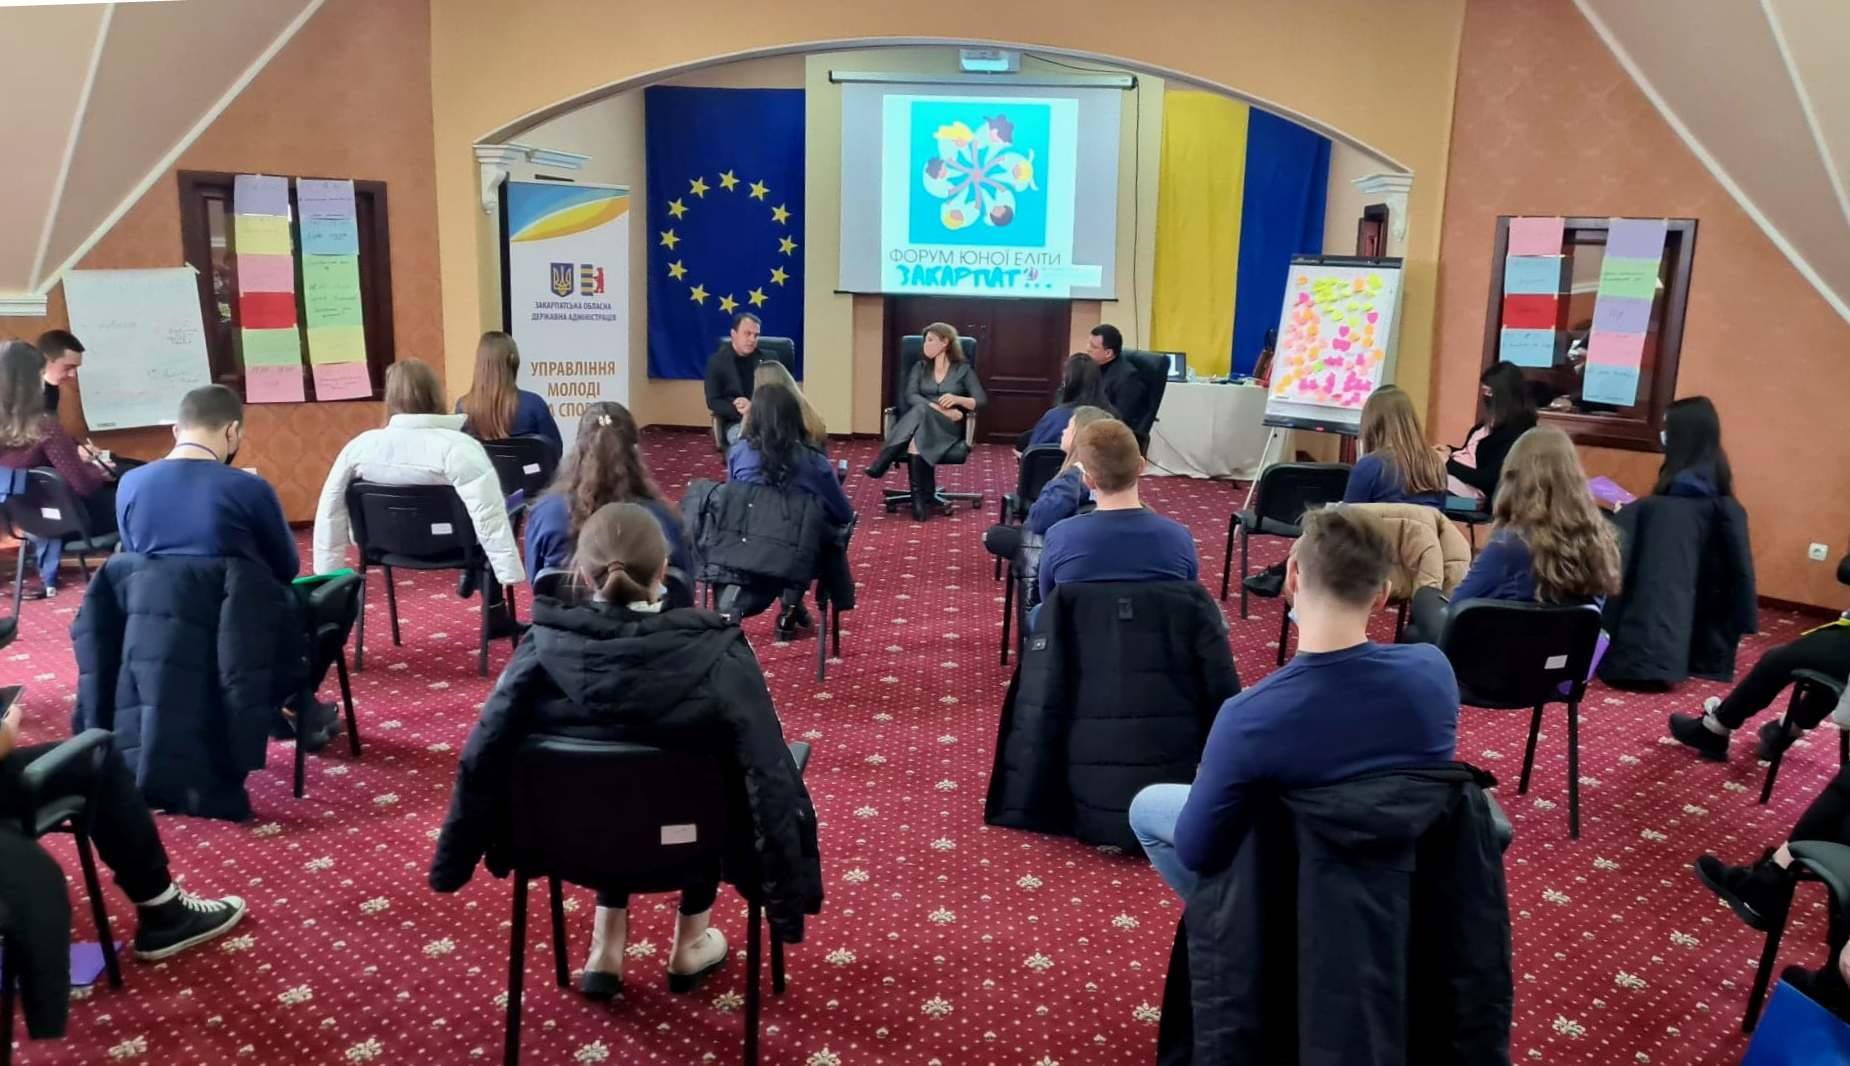 25 представників учнівського та студентського самоврядування області беруть участь у дводенному Форумі юної еліти Закарпаття, який стартував 3 грудня на Ужгородщині.

